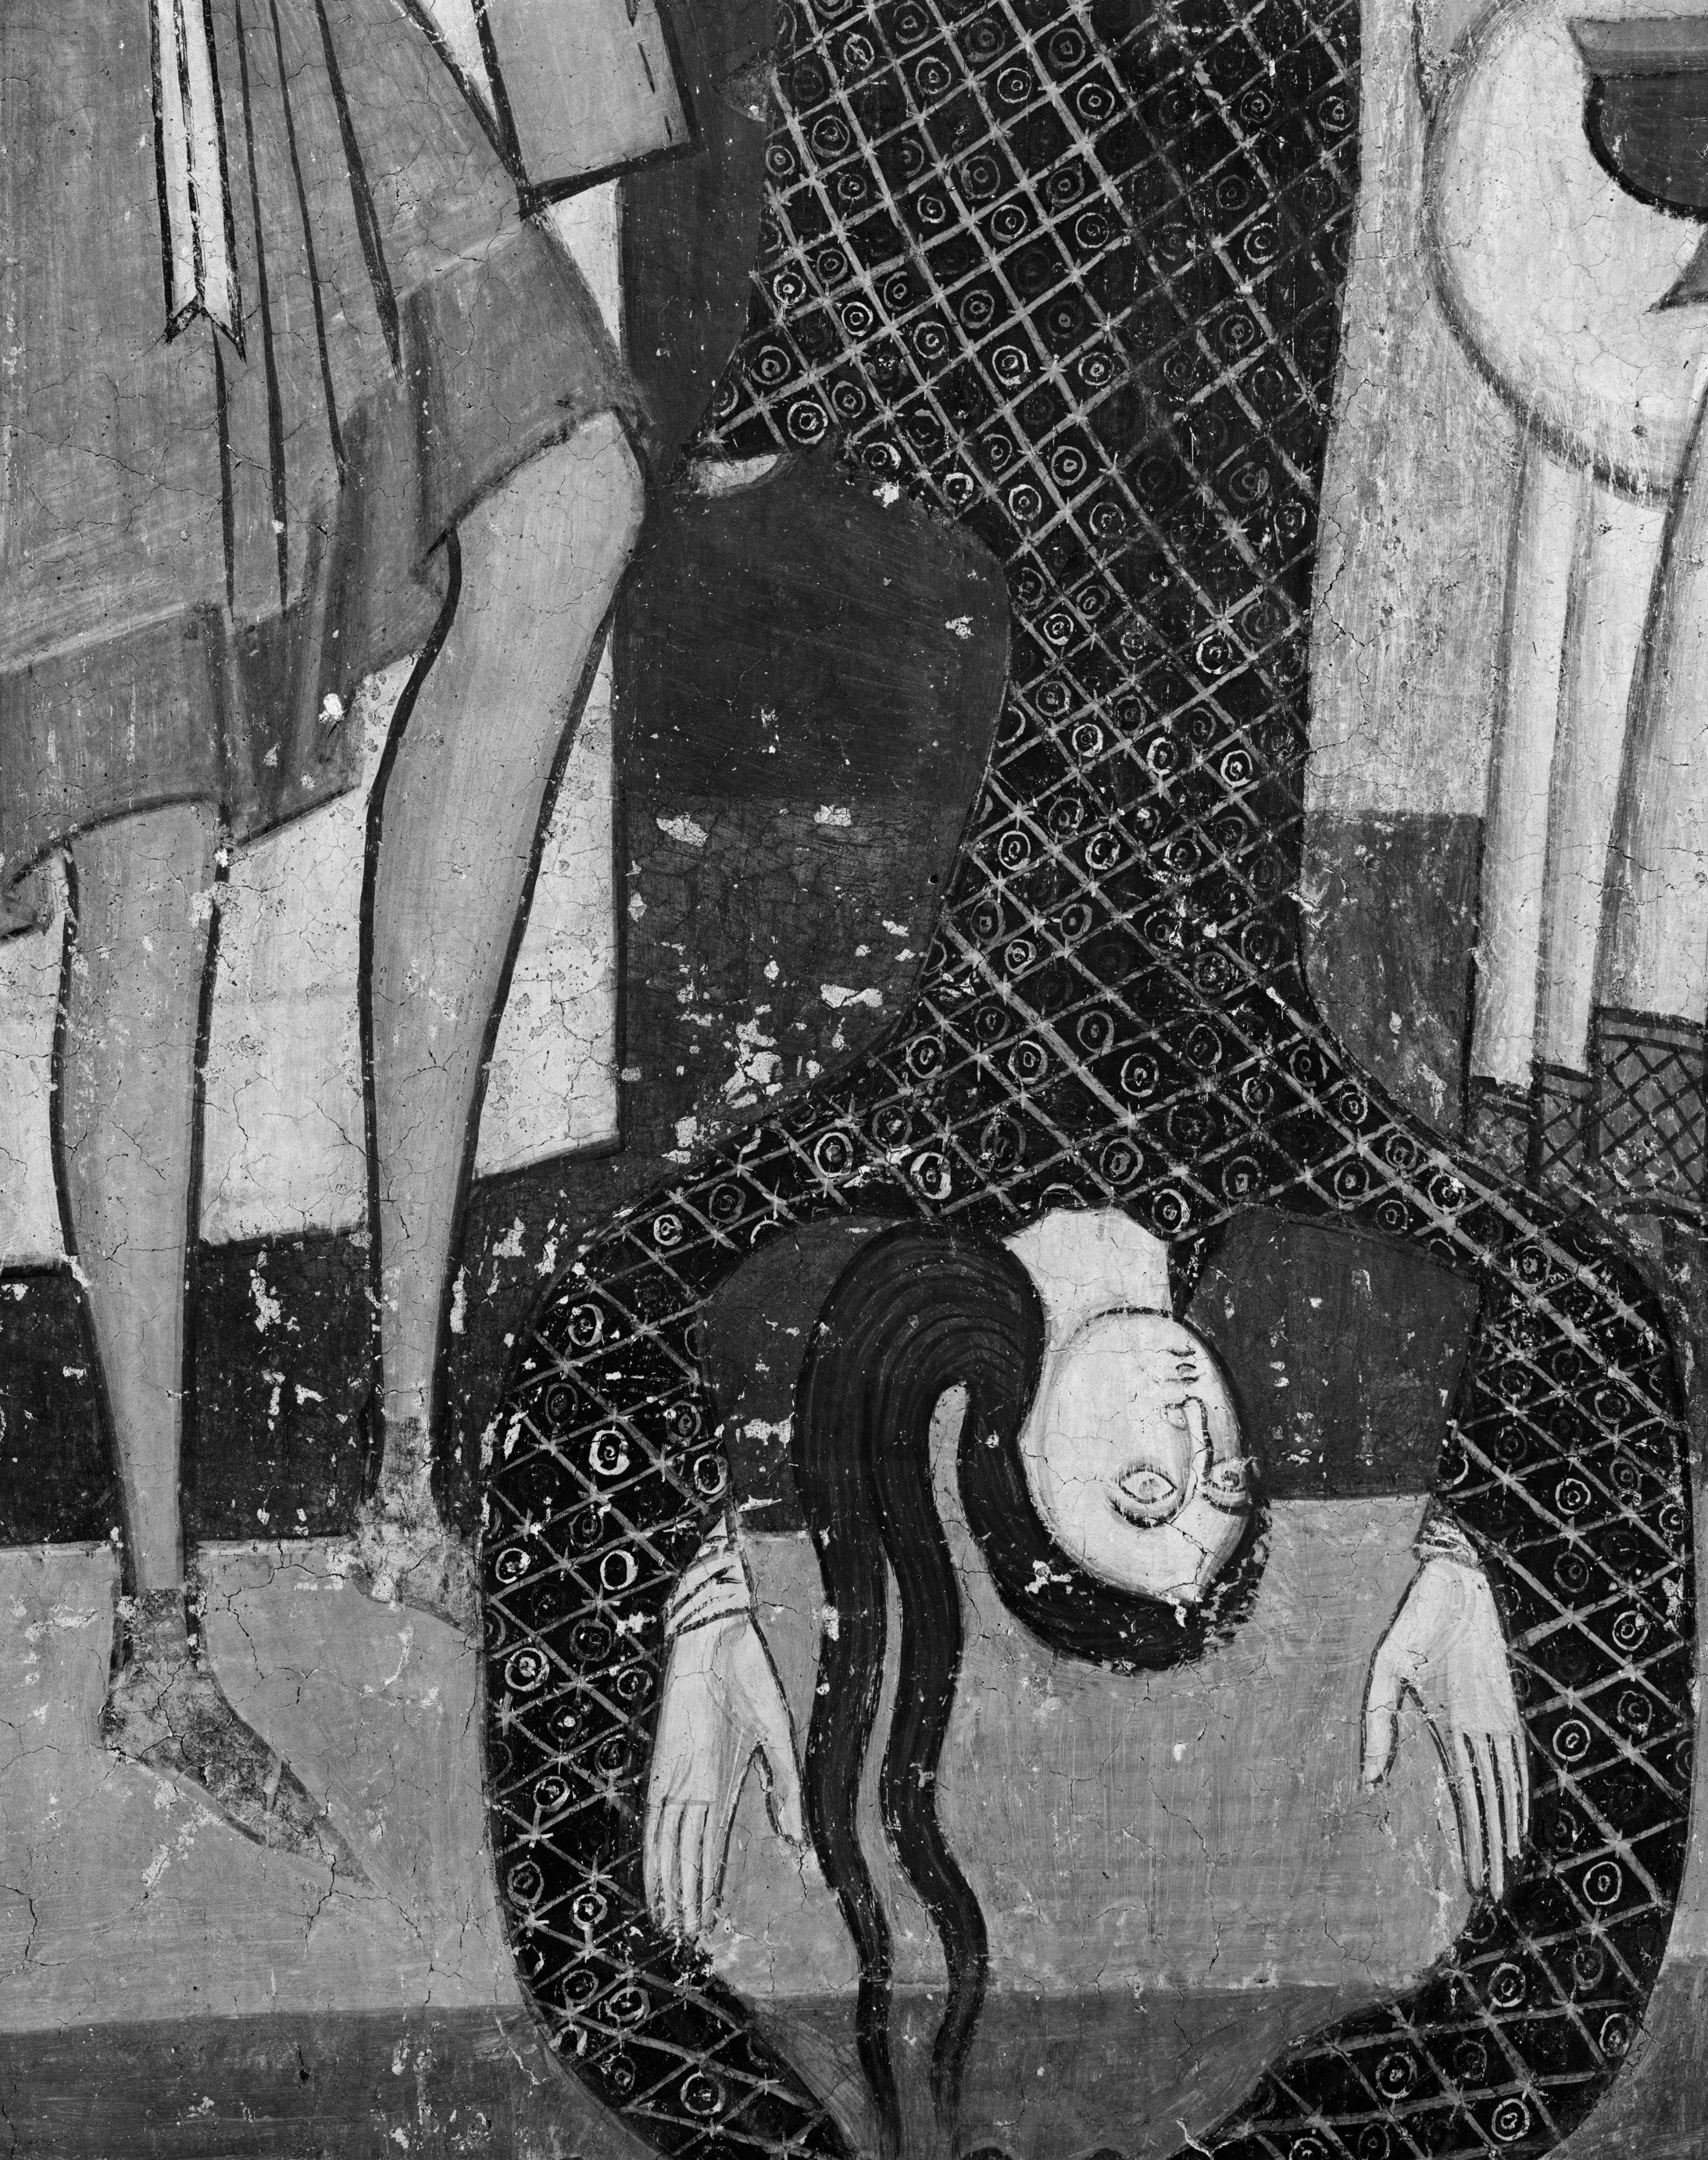 Unbekannte Malerwerkstatt, Tanzende Salome (Detail aus: Szenen aus dem Martyrium Johannes des Täufers), um 1200, Wandmalerei, Müstair, Kloster St. Johann
© Foto: Florio Puenter
